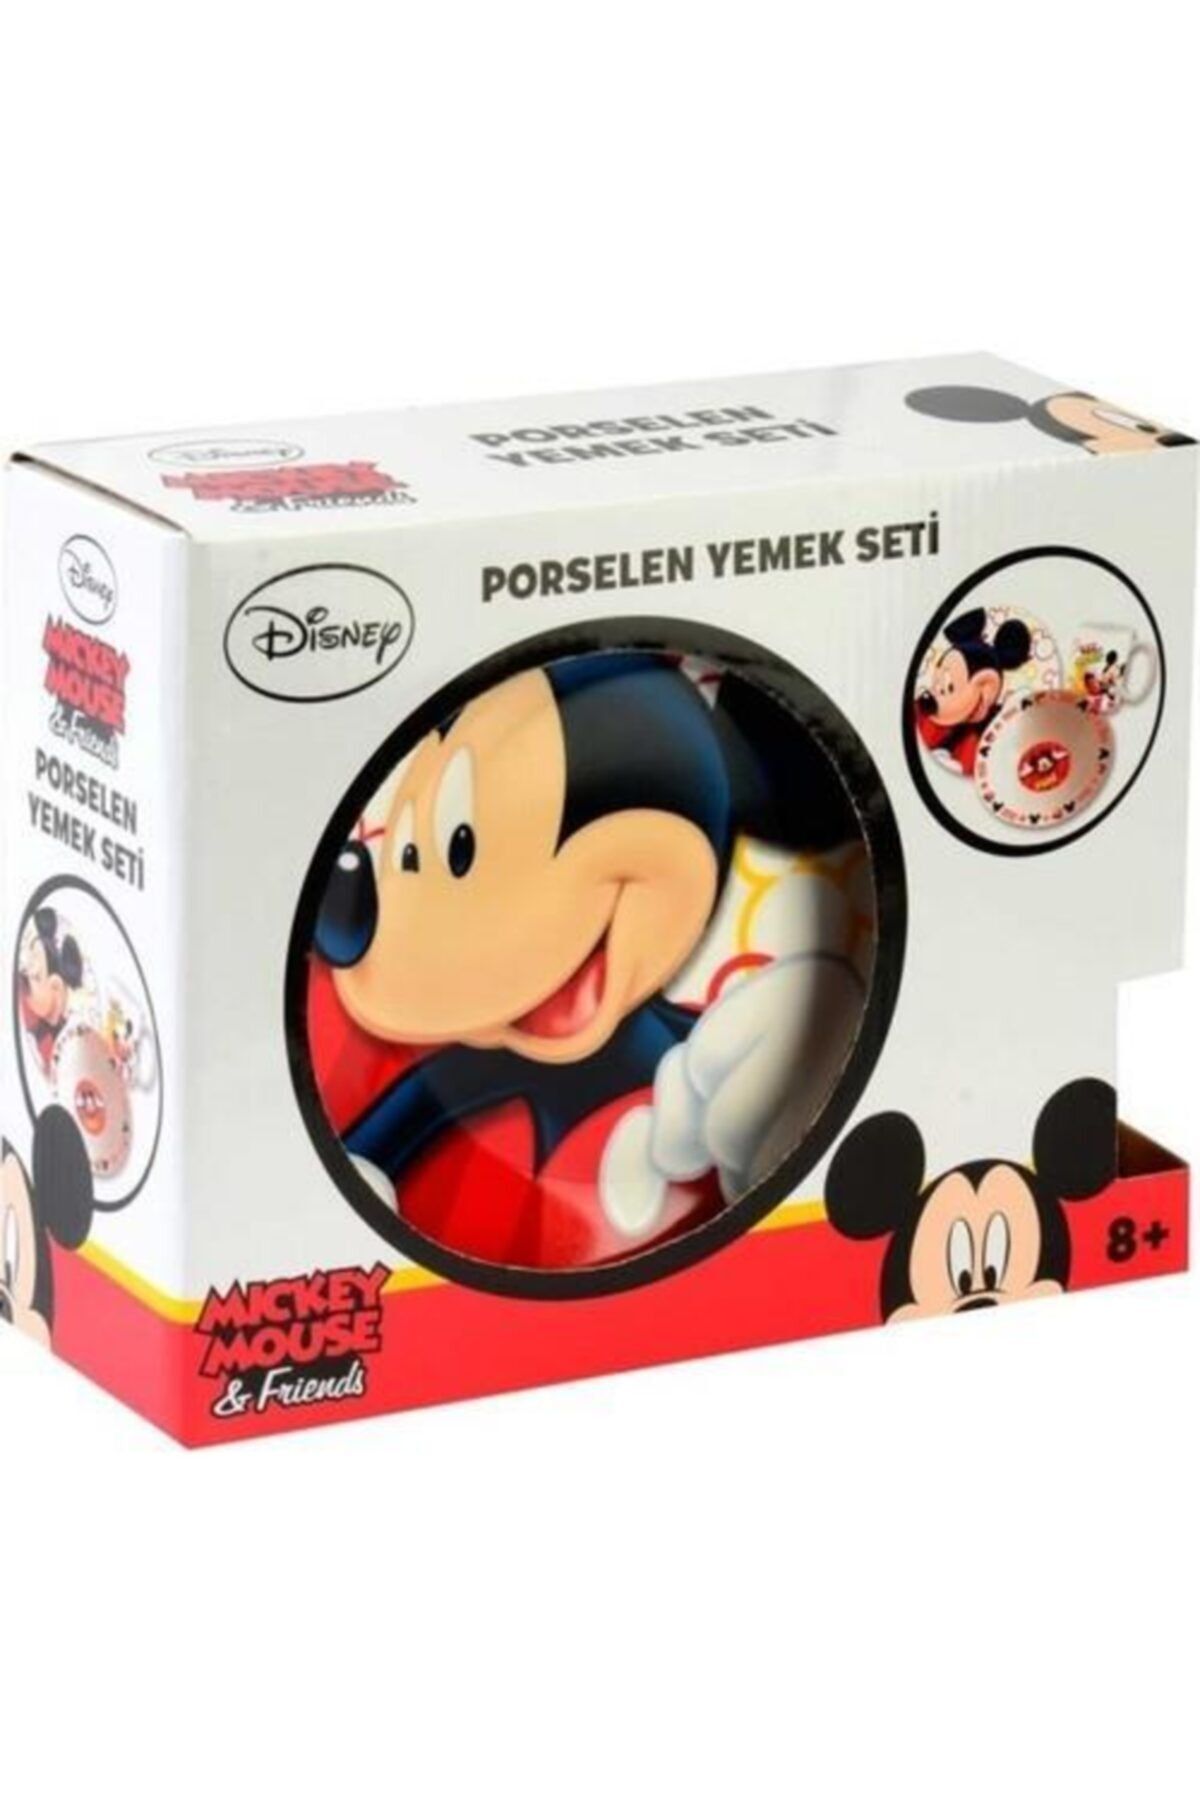 Mickey Mouse Disney Lisanslı Mickey Mouse 3 Lü Yemek Seti - Mickey Mouse Beslenme Seti